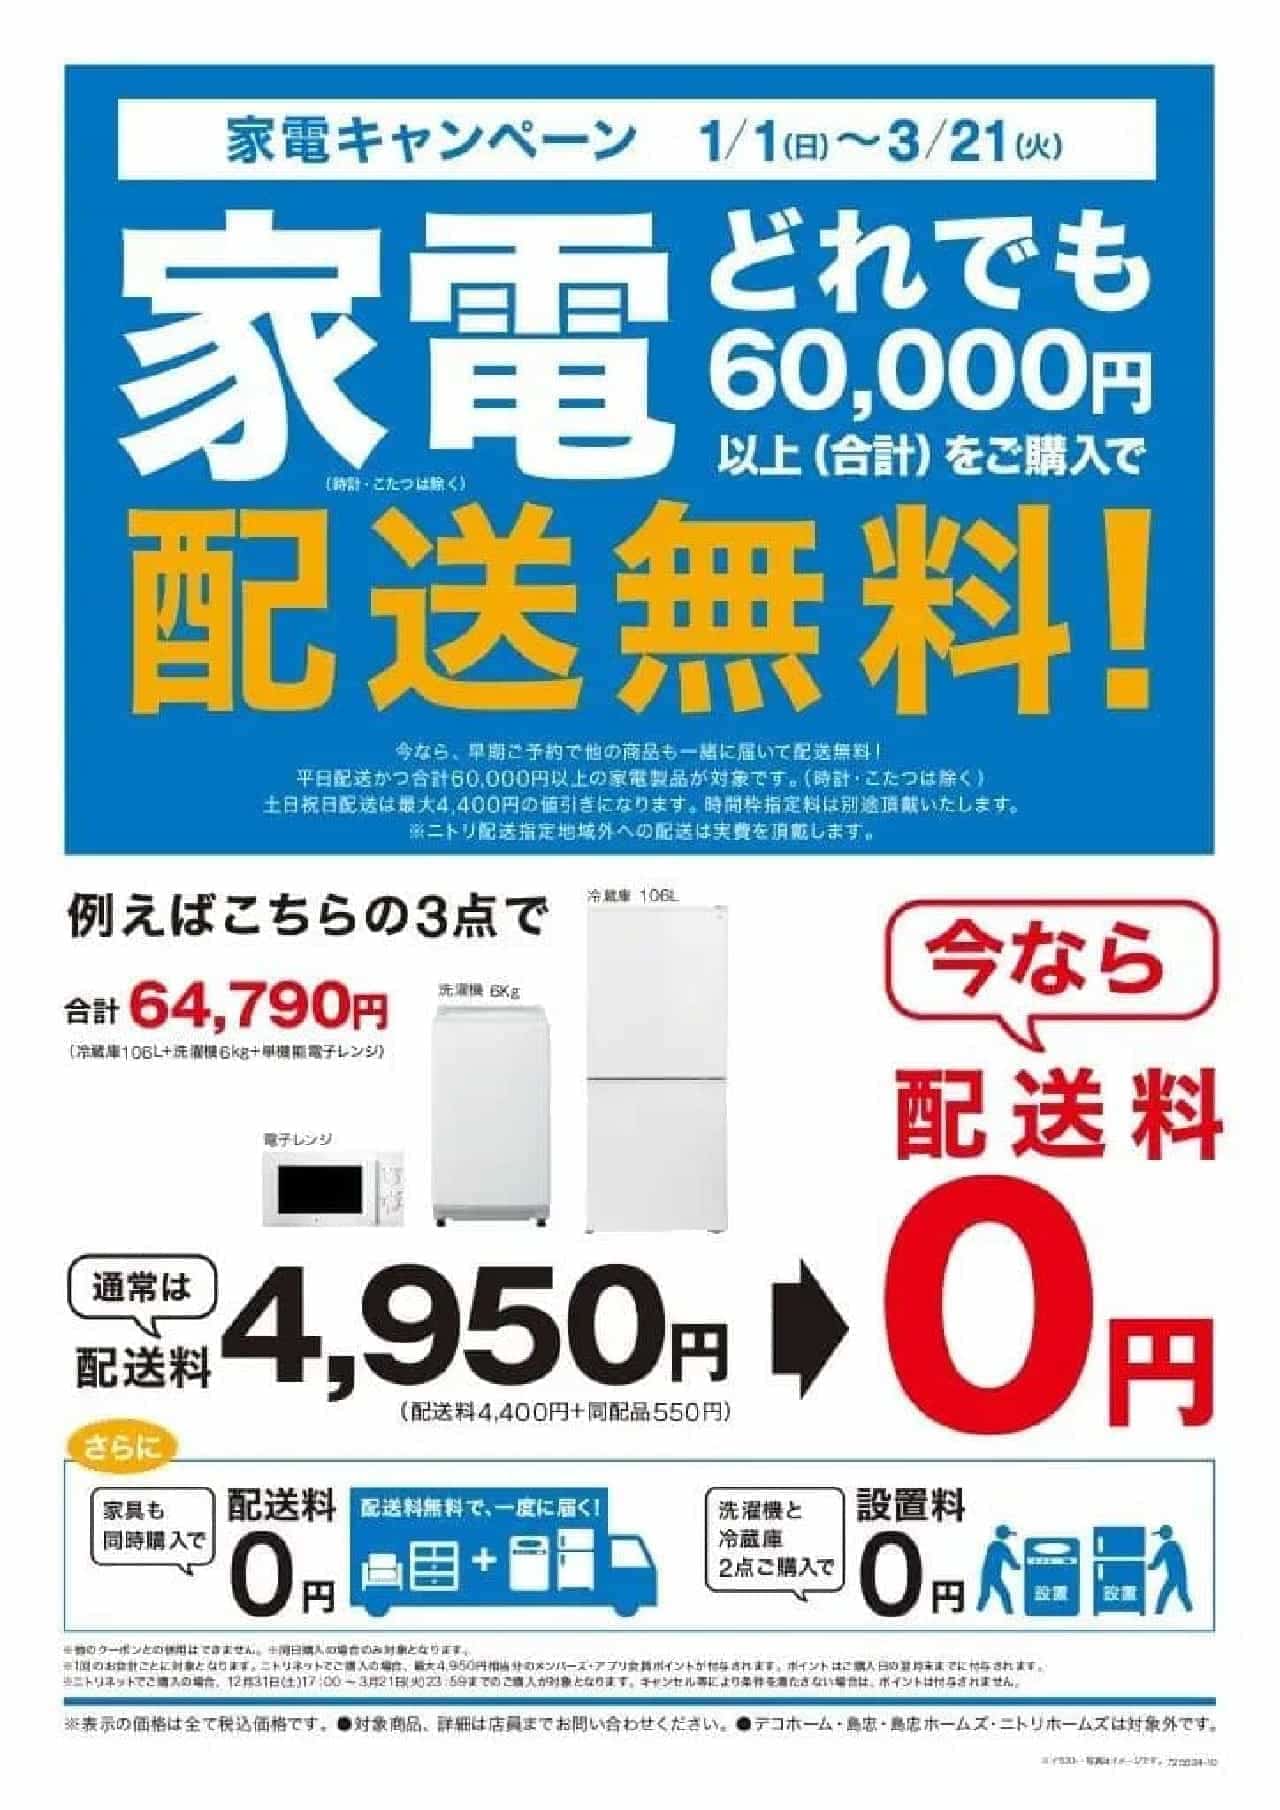 Nitori's Free Appliance Delivery Campaign